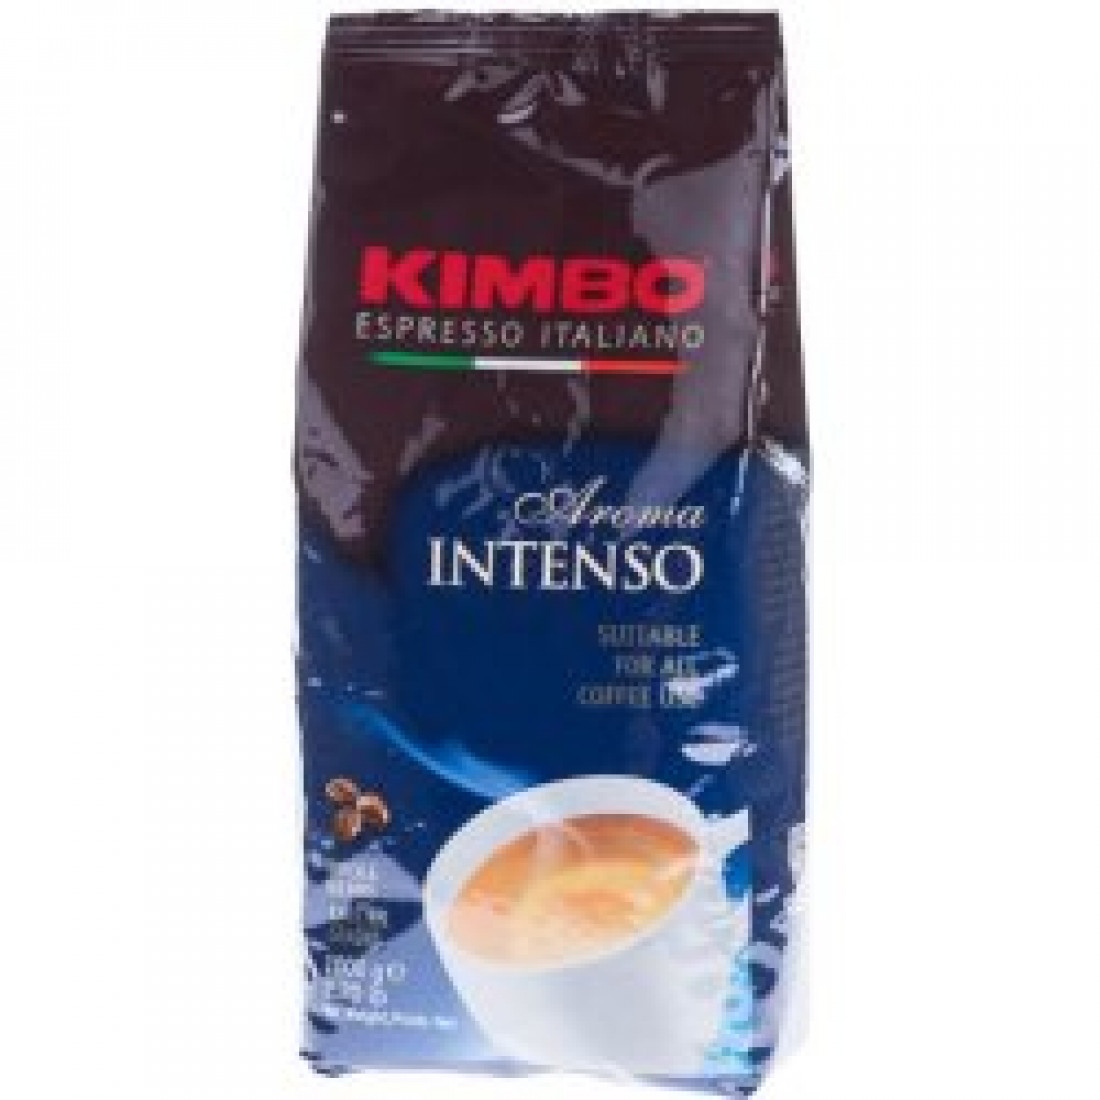 Кофе aroma intenso. Кофе в зернах Kimbo Aroma intenso 1кг. Кофе Kimbo intenso зерно, 1кг. Подарочный набор Kimbo молотый кофе 2 x 250г Estate чай 2 x 45г. Ут000001166 кофе Кимбо 250г Интенсо молотый.